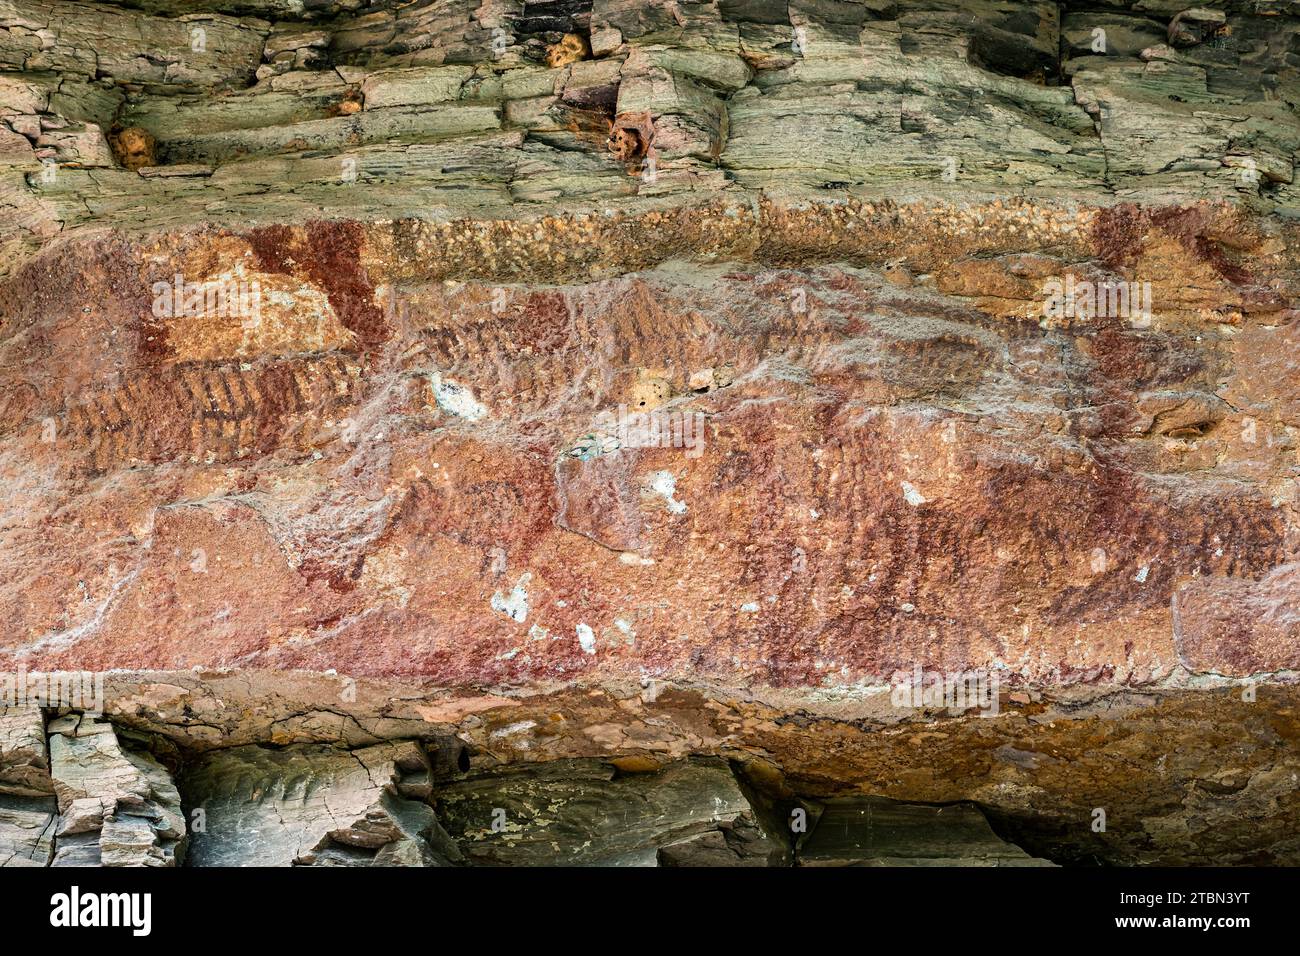 Parc national de PHA Taem, peintures rupestres préhistoriques à la falaise du Mékong (rivière), Groupe 1 'Pha Kham', Ubon Ratchathani, Thaïlande, Asie du Sud-est, Asie Banque D'Images